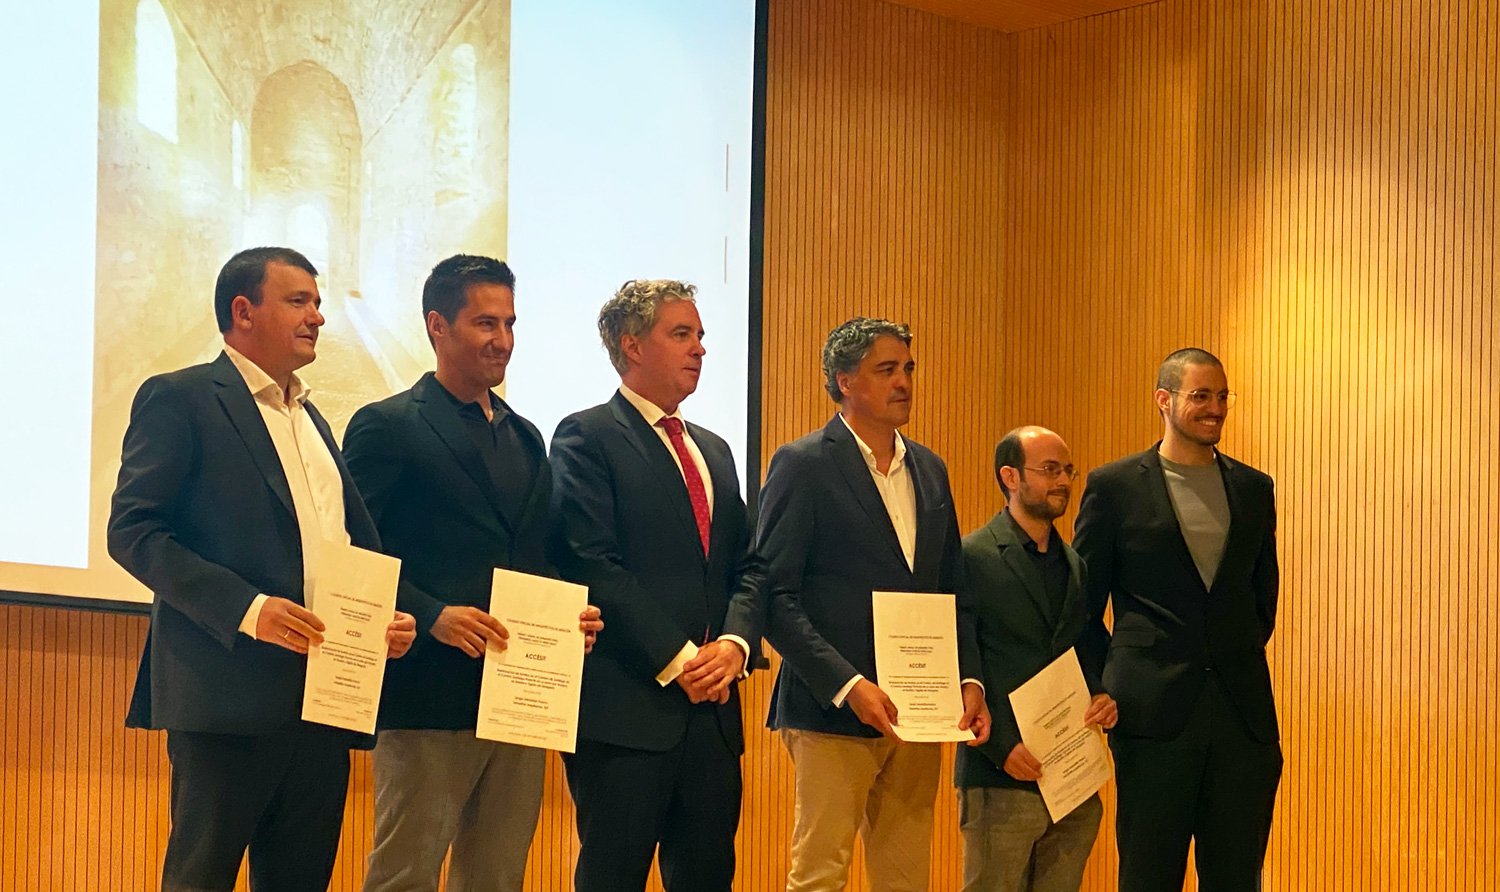 Reconocimiento en el Premio García Mercadal a la restauración de ermitas en el Camino de Santiago ￼￼